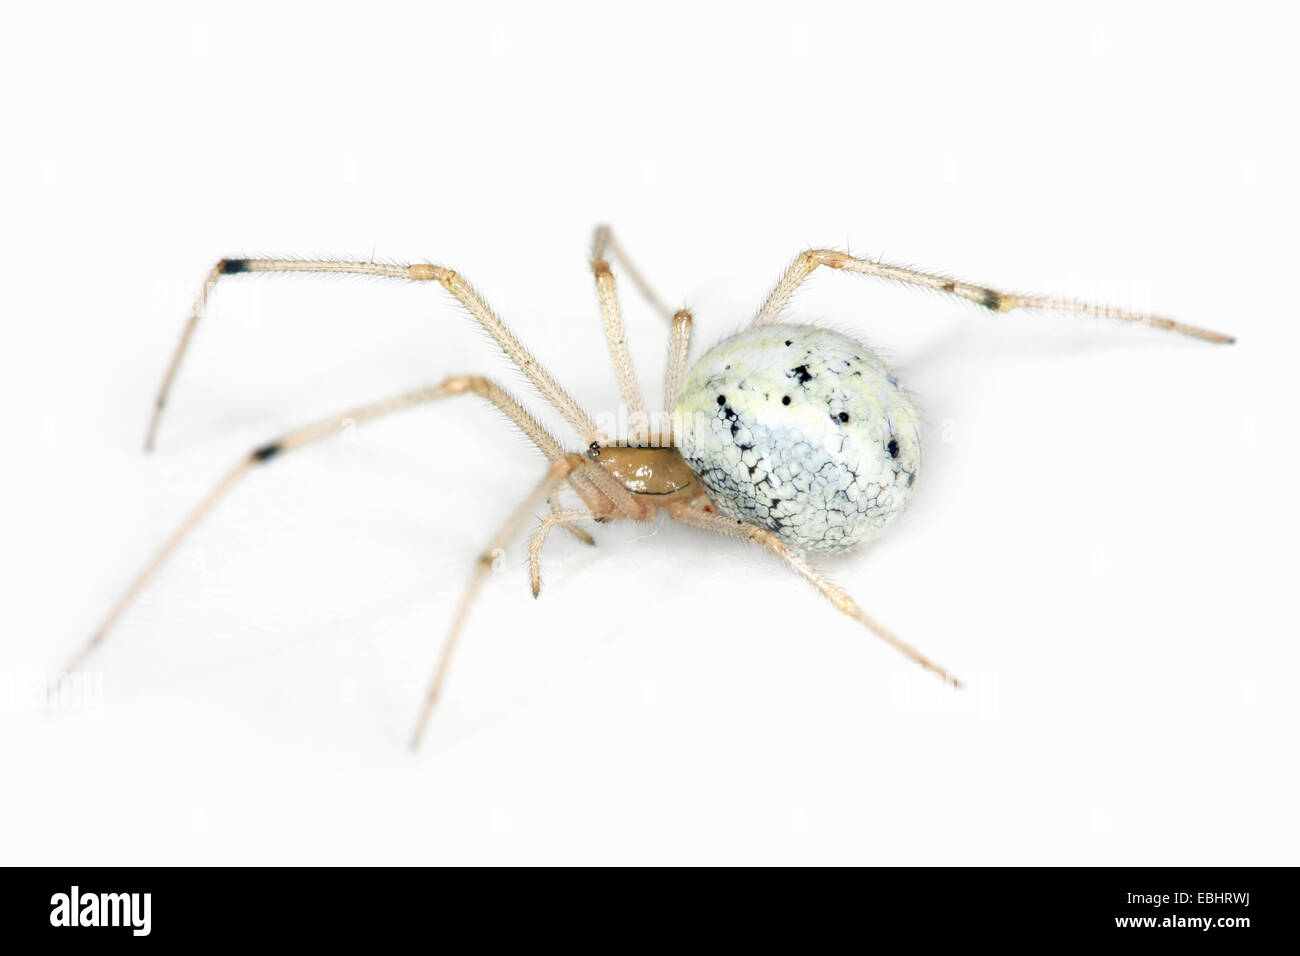 Una hembra Candystripe (o polimórficos) araña (Enoplognatha ovata) sobre un fondo blanco, parte de la familia Theridiidae - Telaraña tejedores. Foto de stock